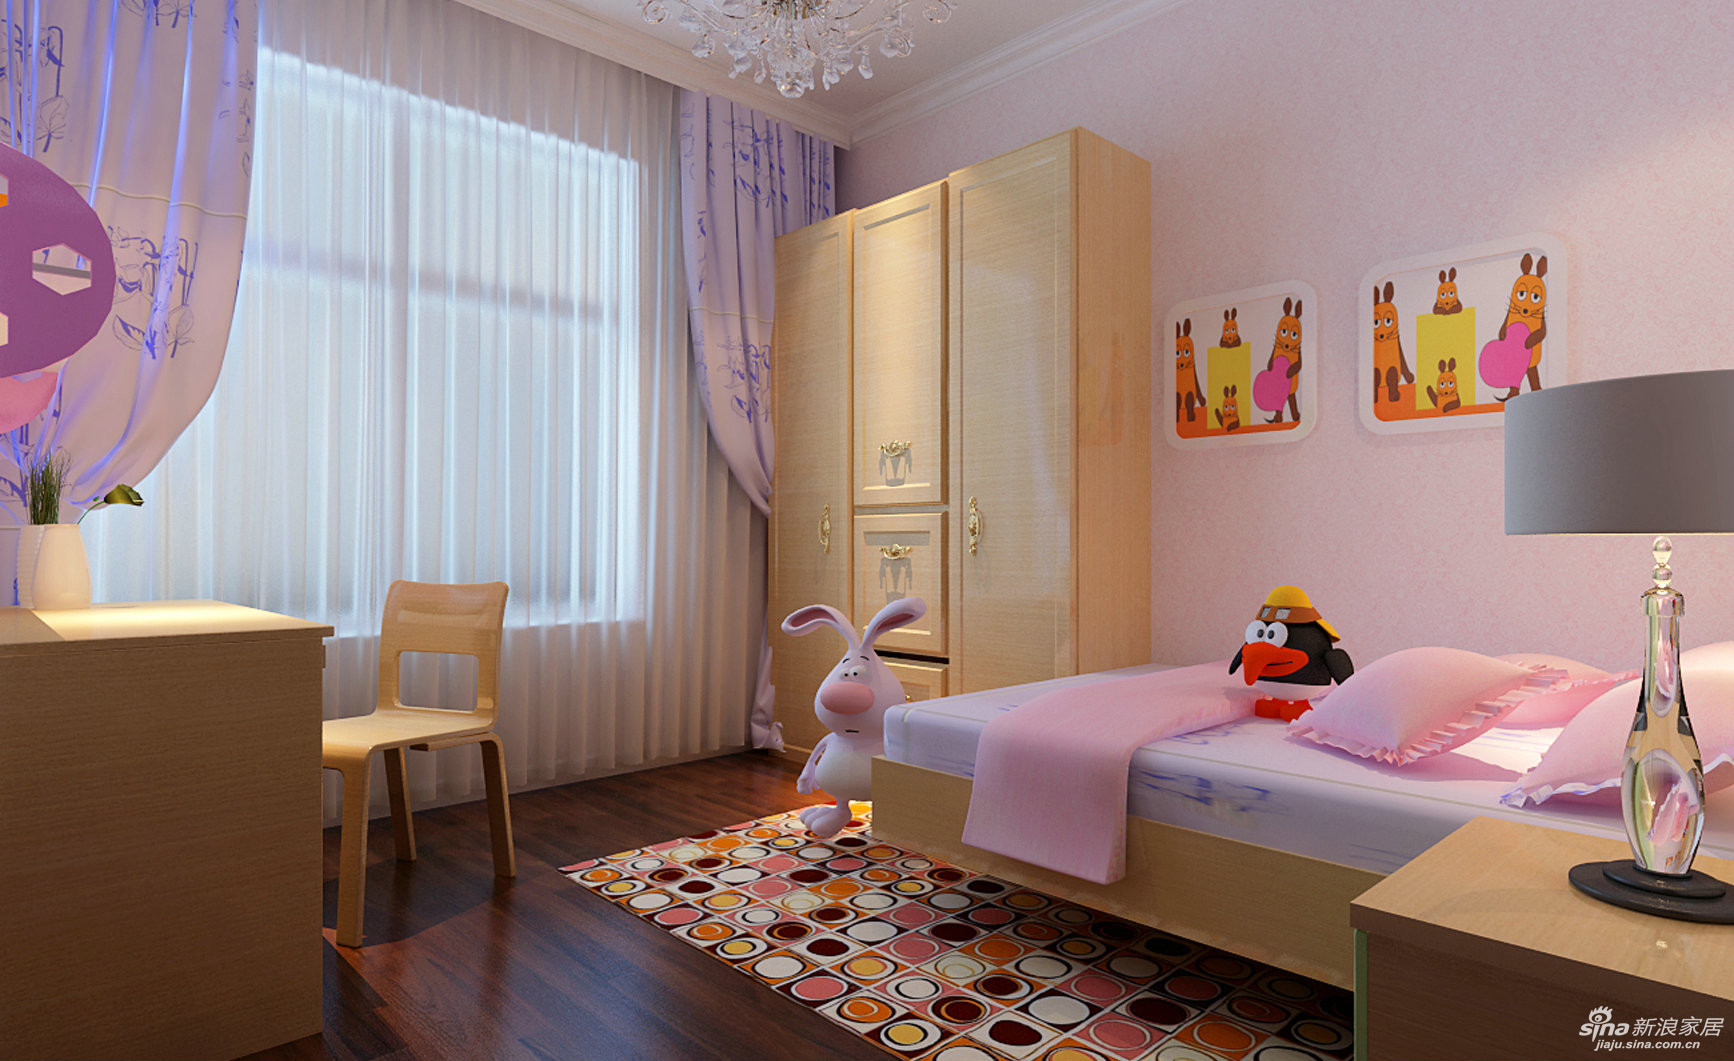 【儿童房在设计上用淡粉色的壁纸,暖色调的空